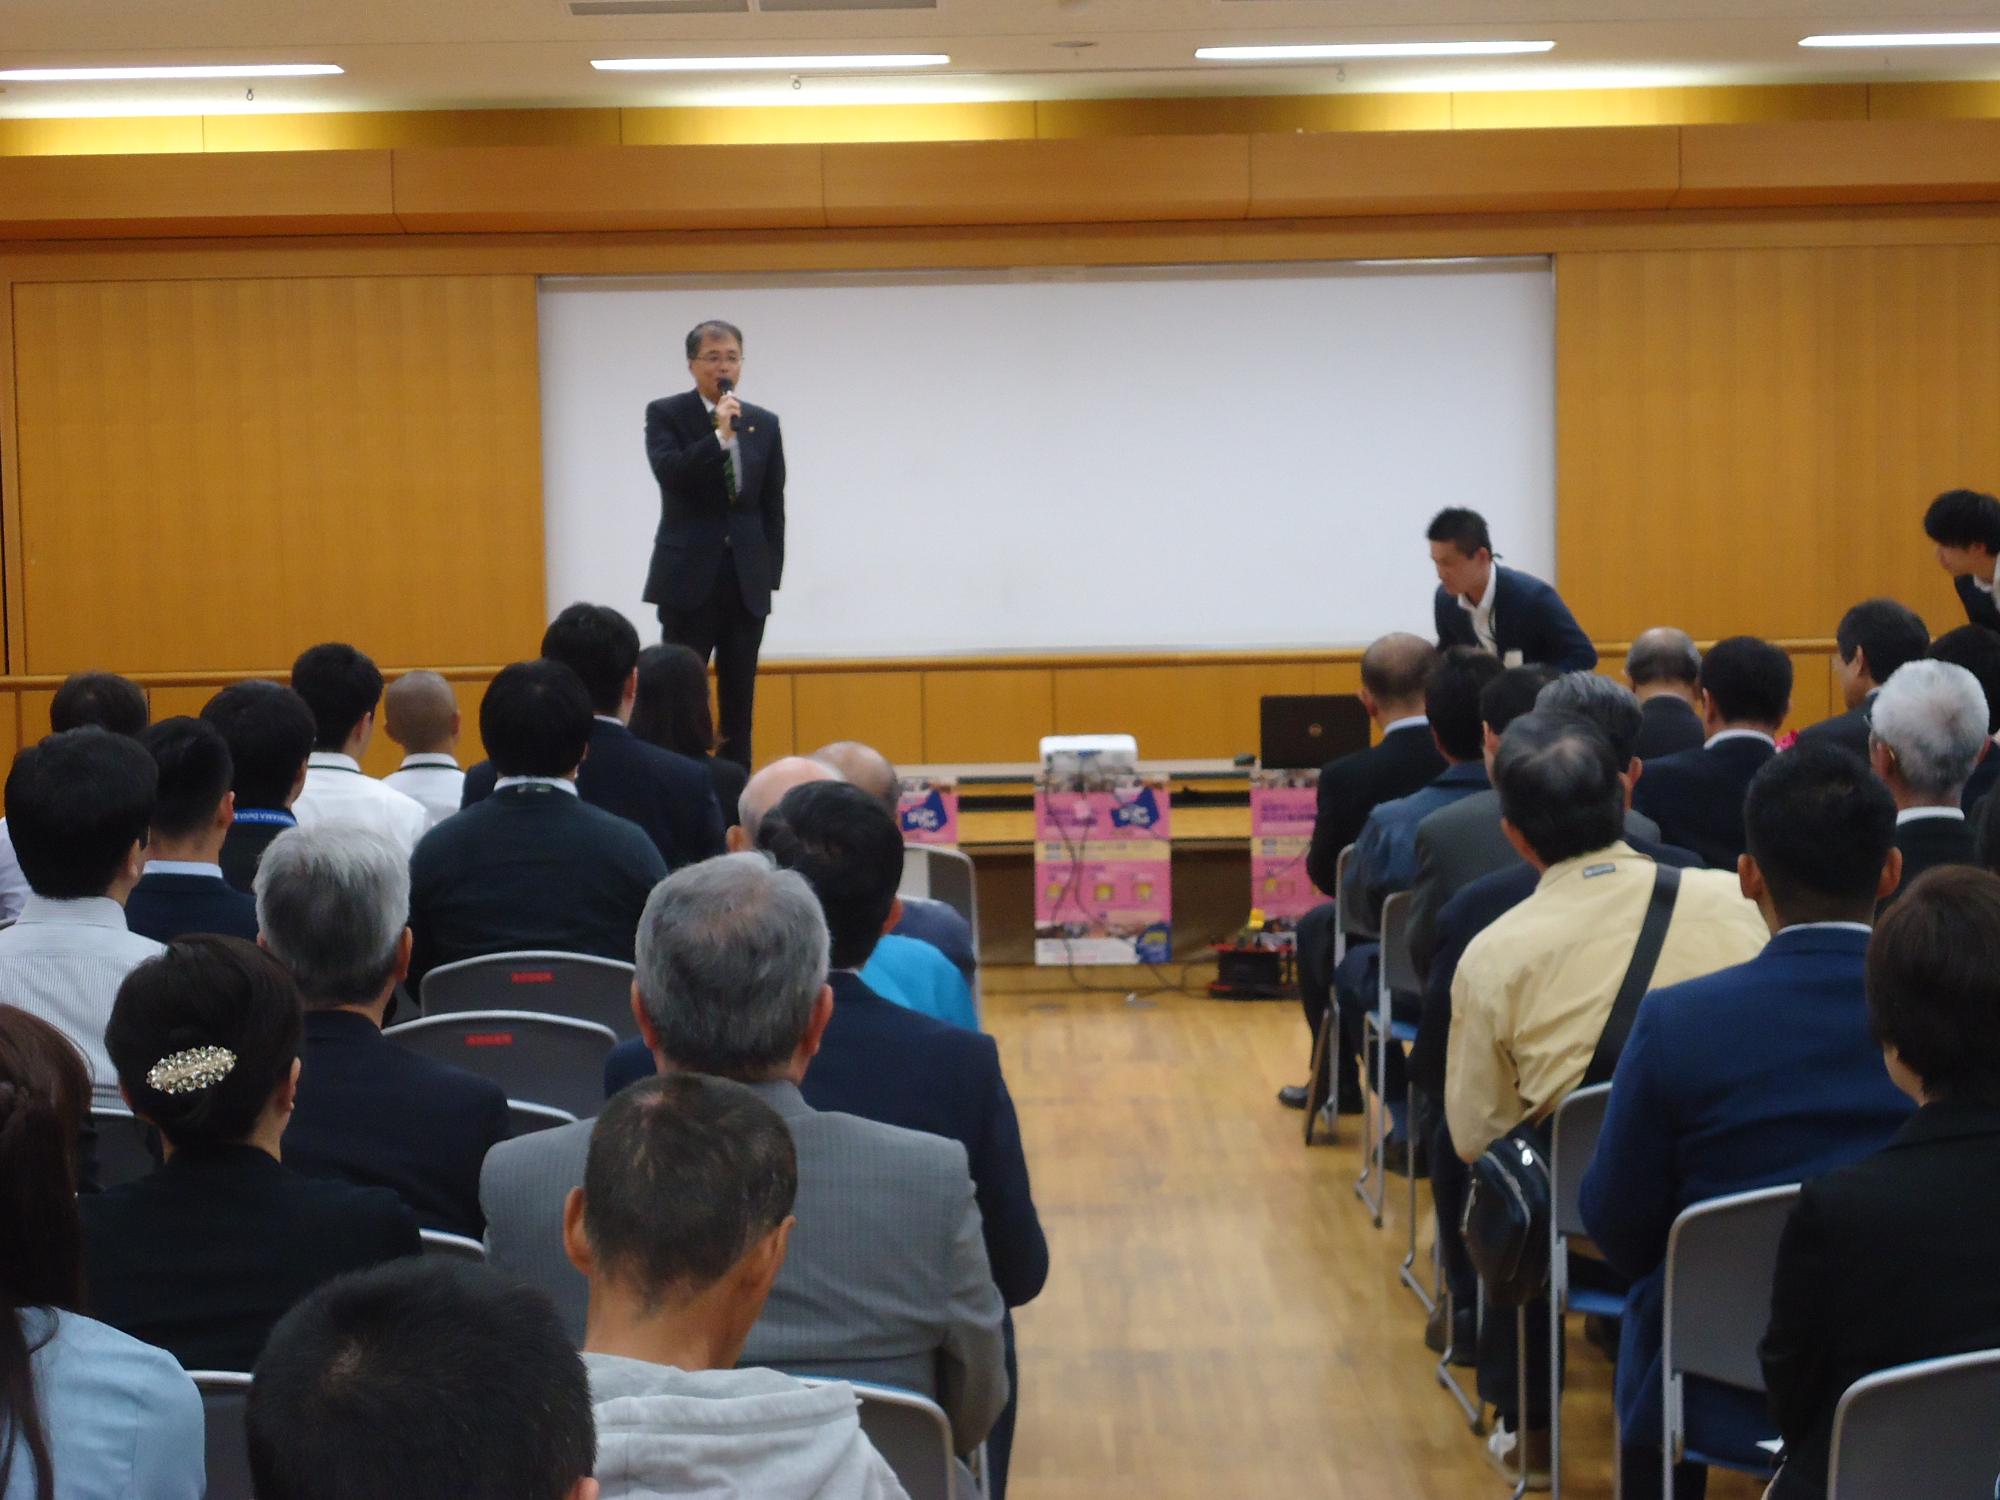 神奈川県座間市における防災講演会での意見発表